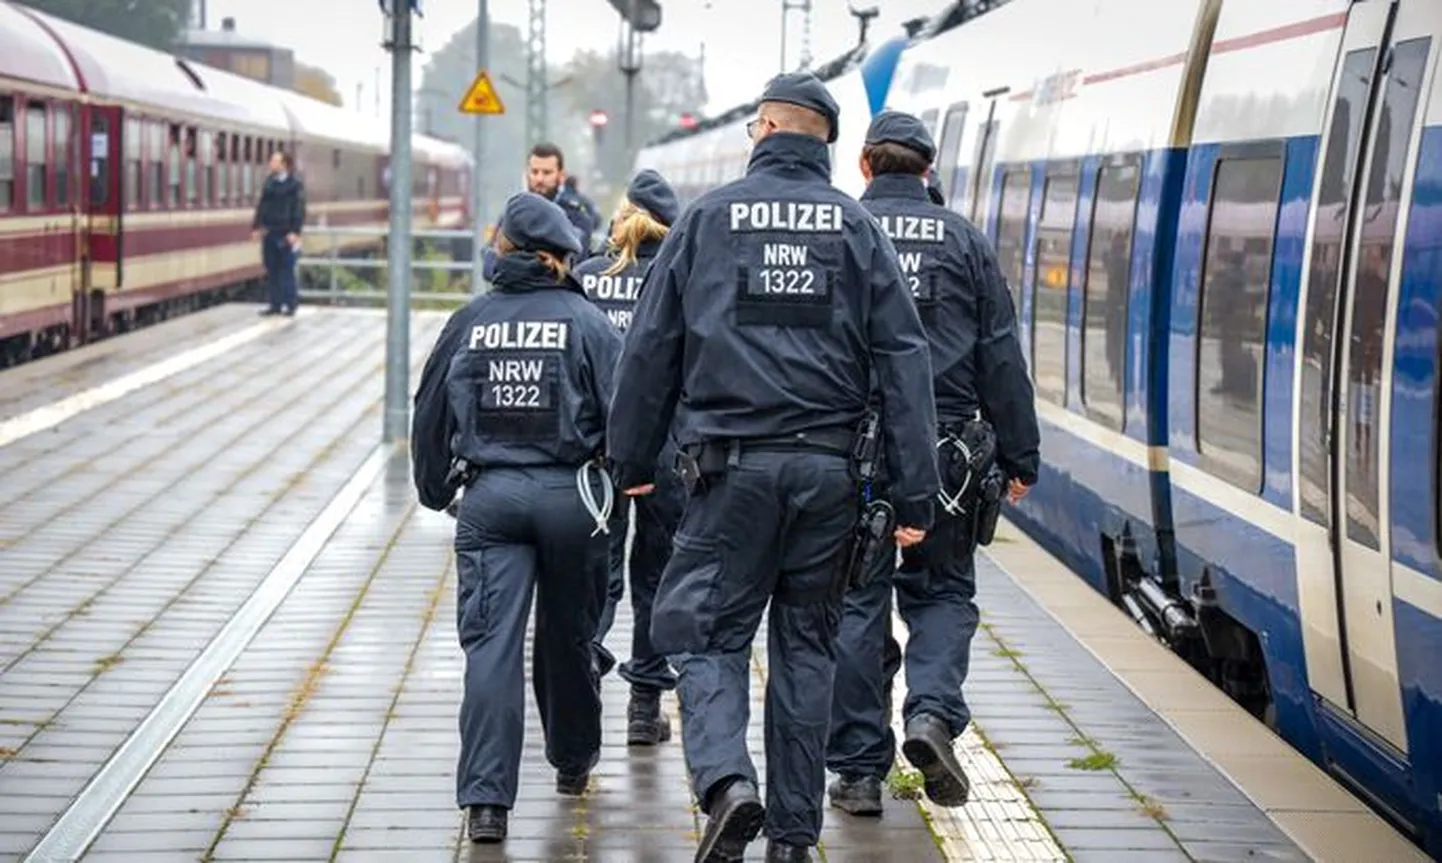 Полицейские Германии нашли в поезде эстонца с 3,26 промилле алкоголя в крови.